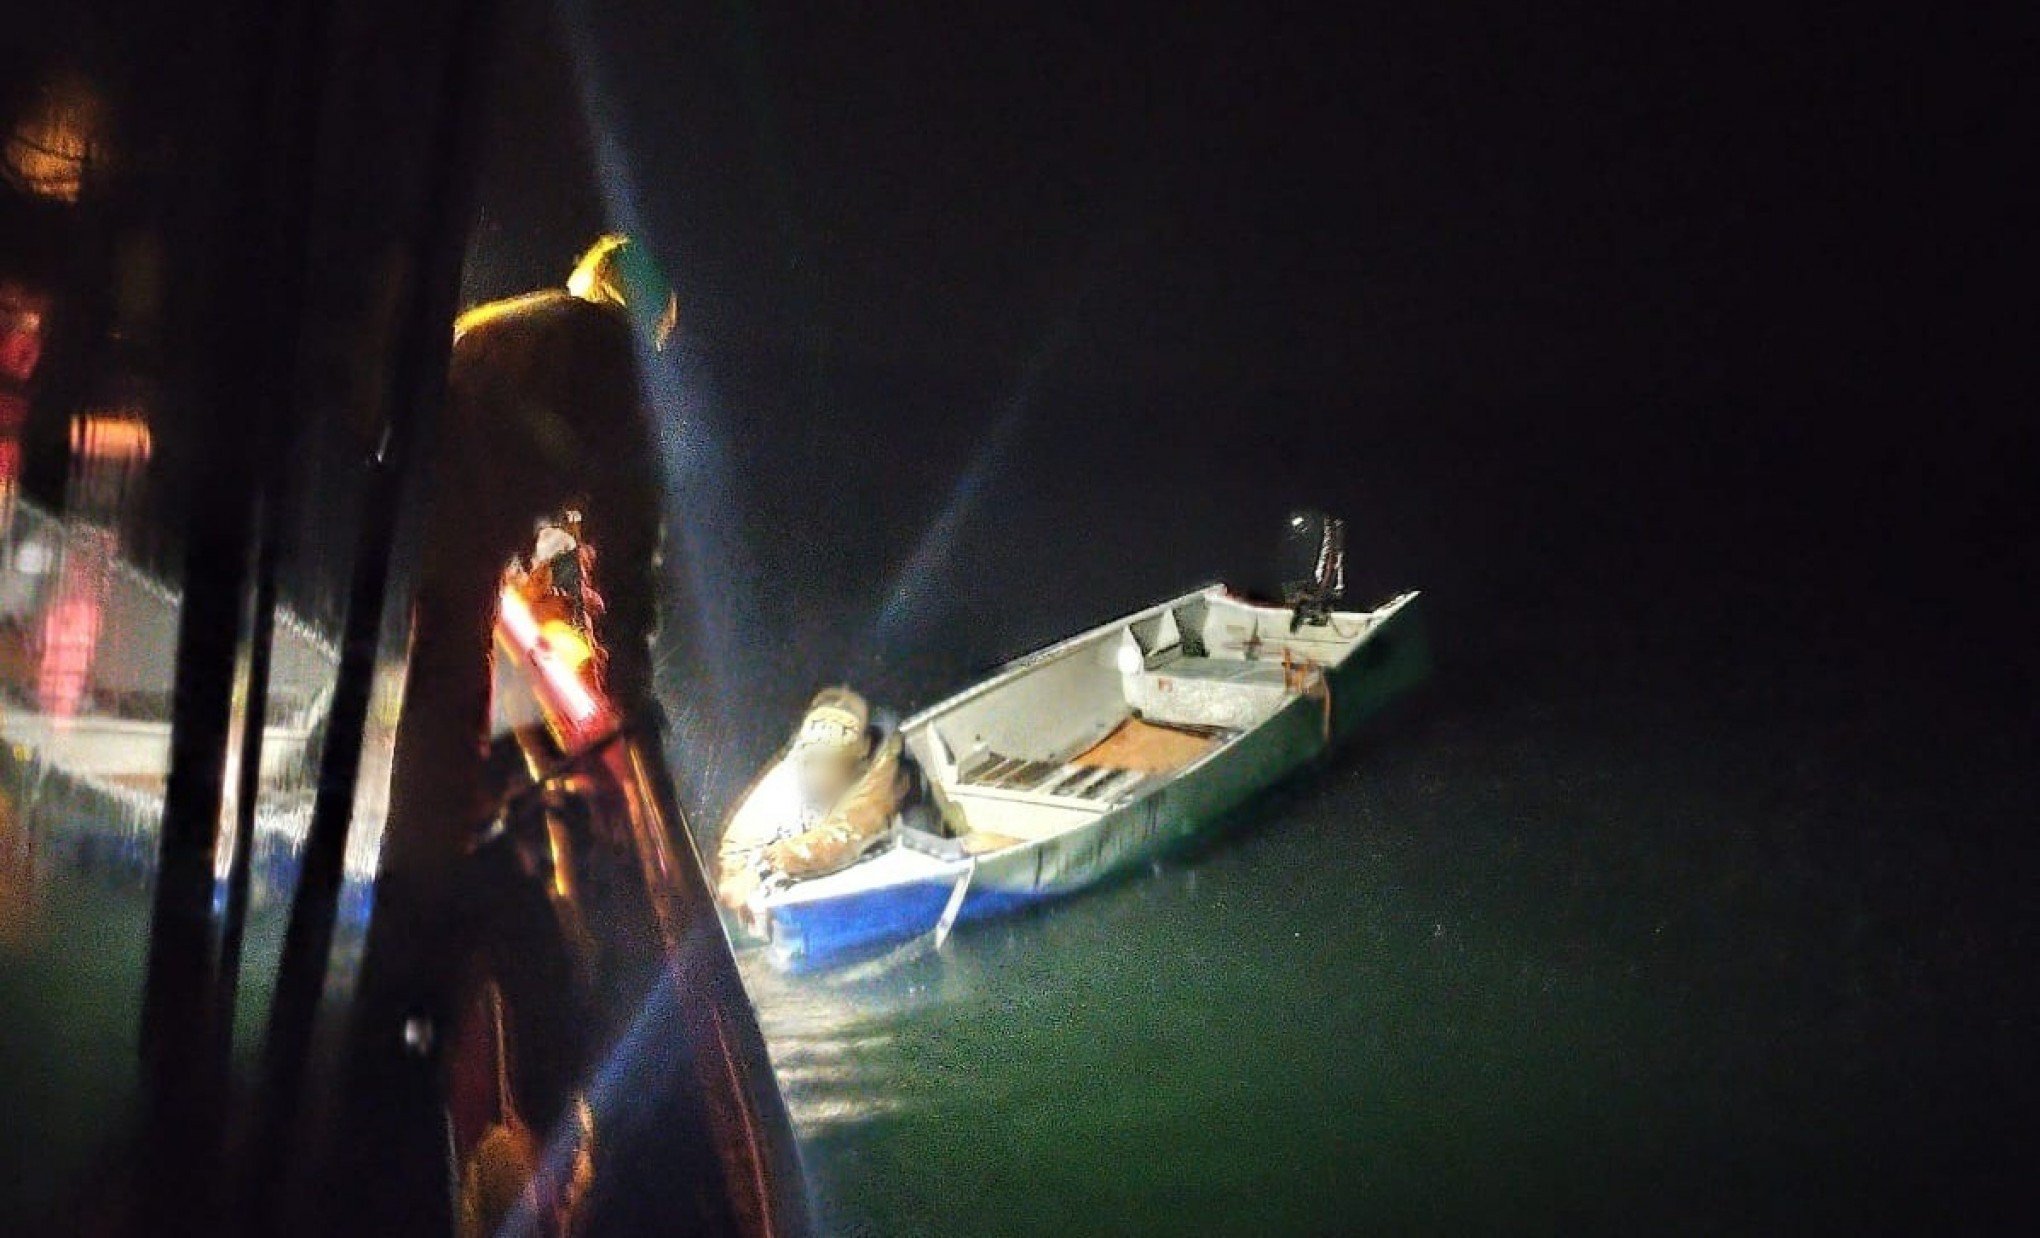 Pescador é resgatado após ficar à deriva no mar durante madrugada